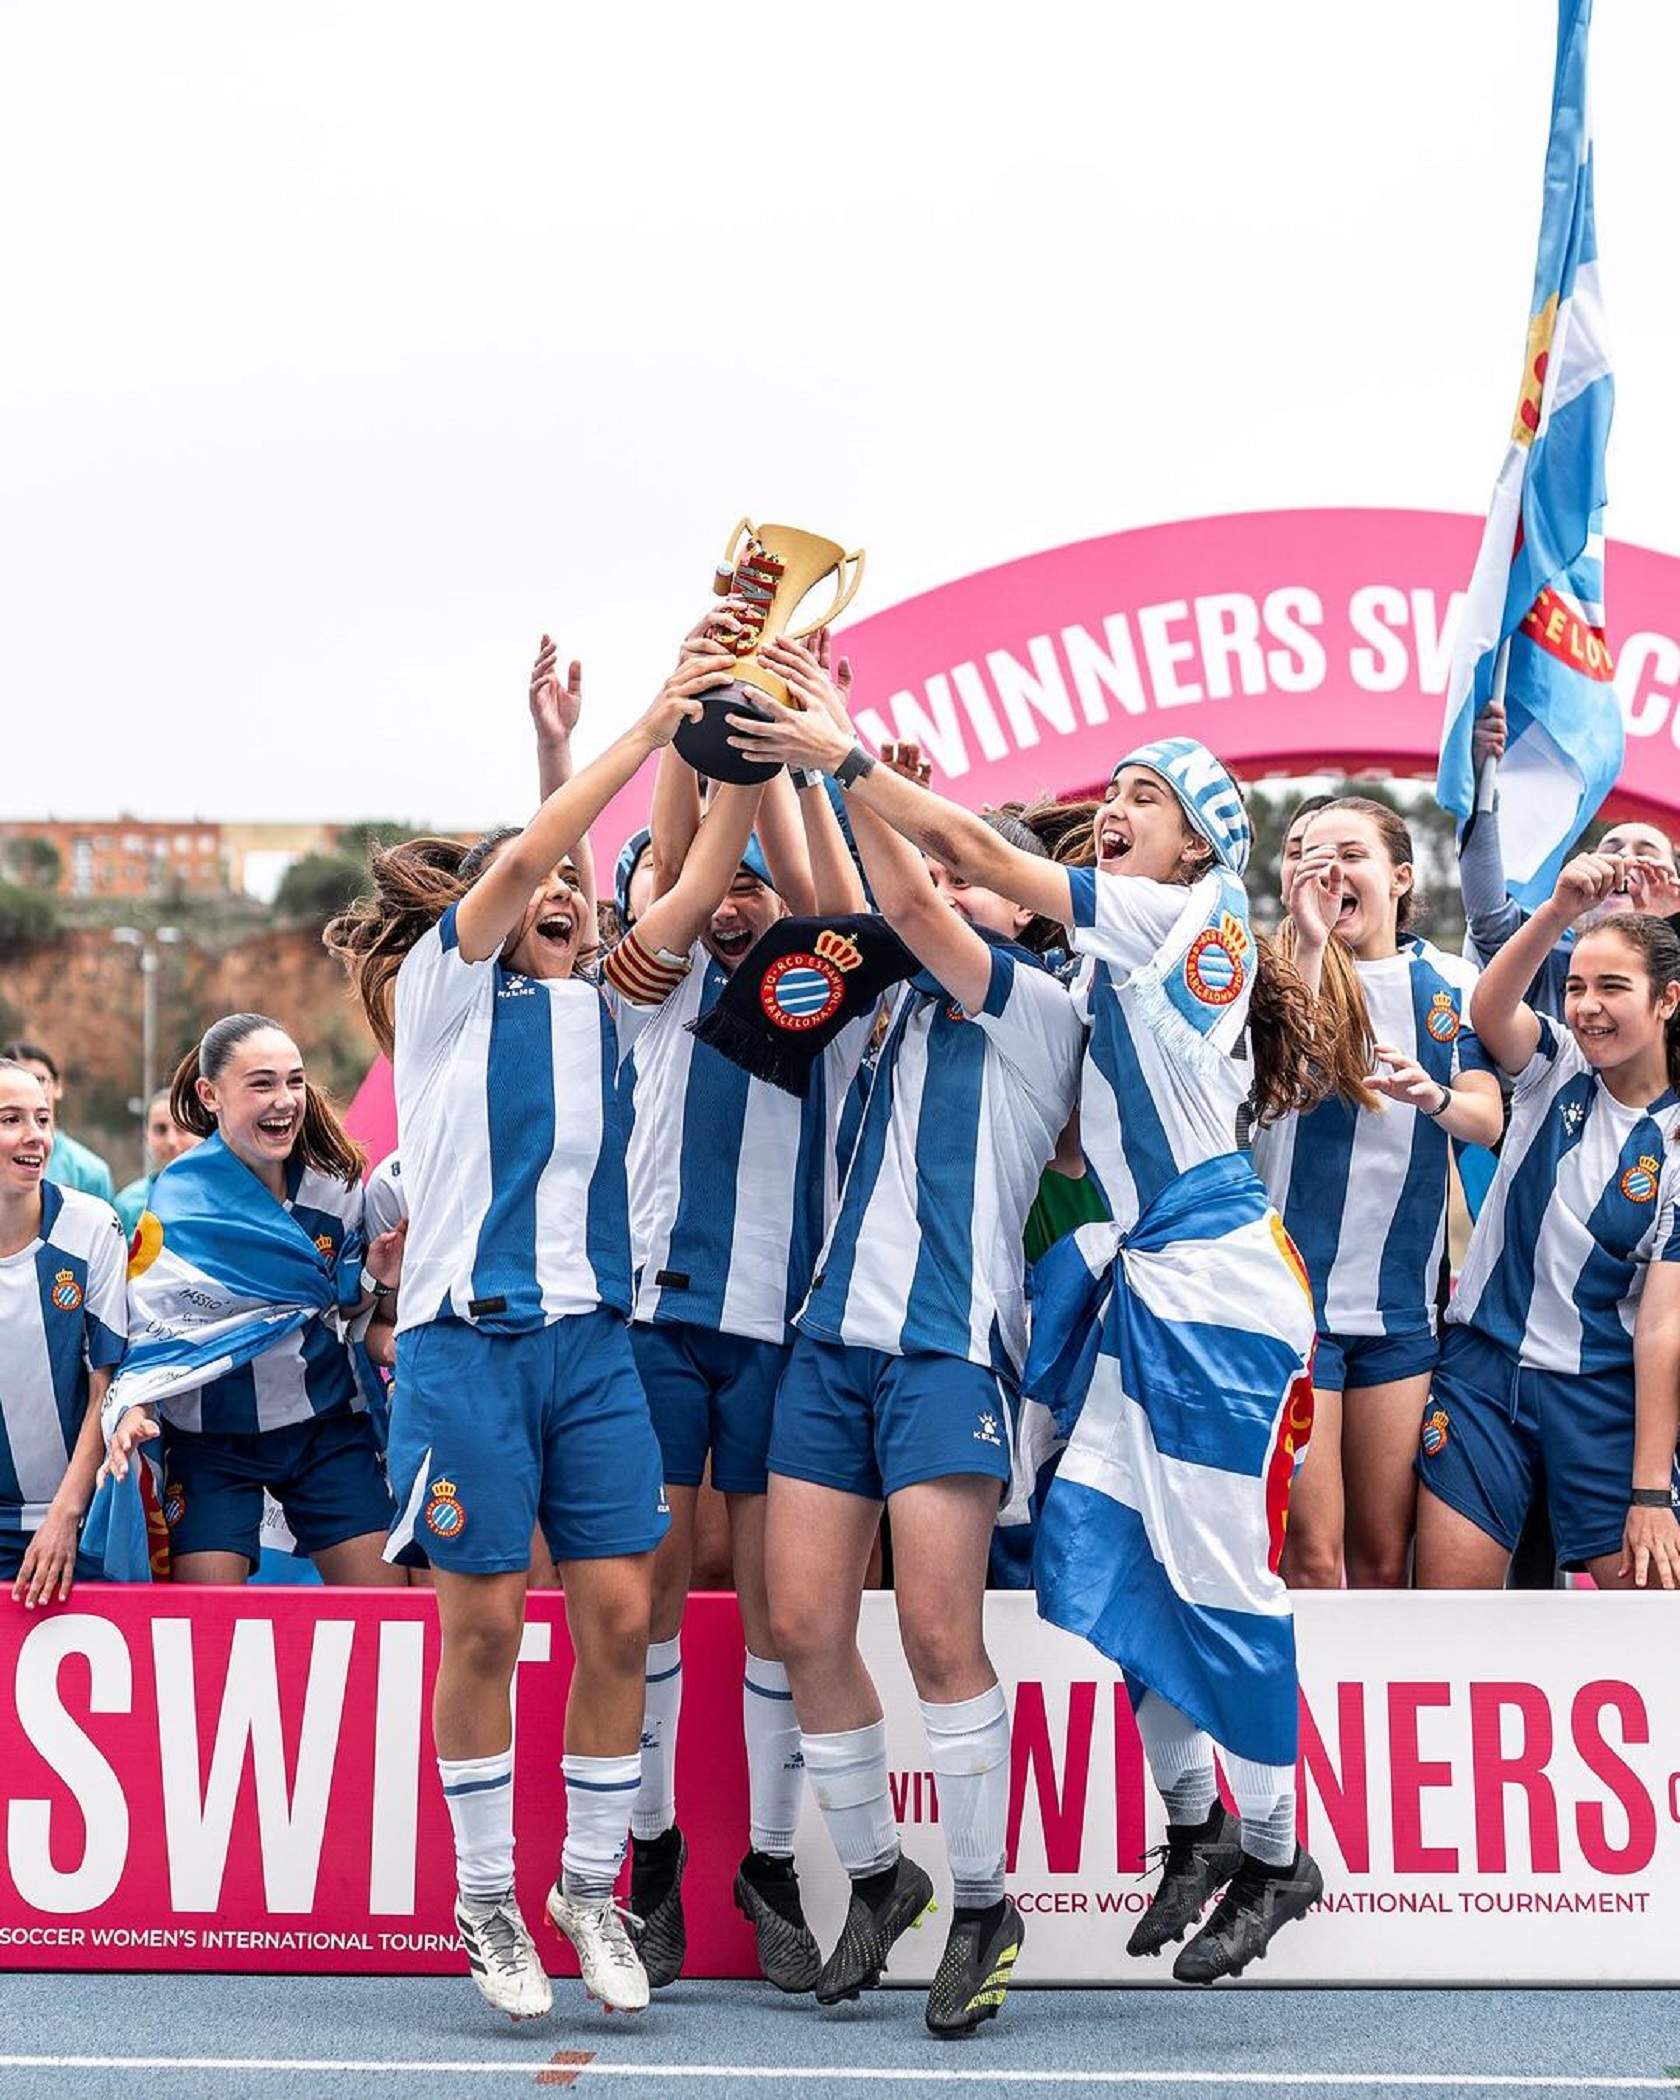 La Swit Cup es referma com a exponent del futbol base femení amb un èxit rotund en la seva segona edició